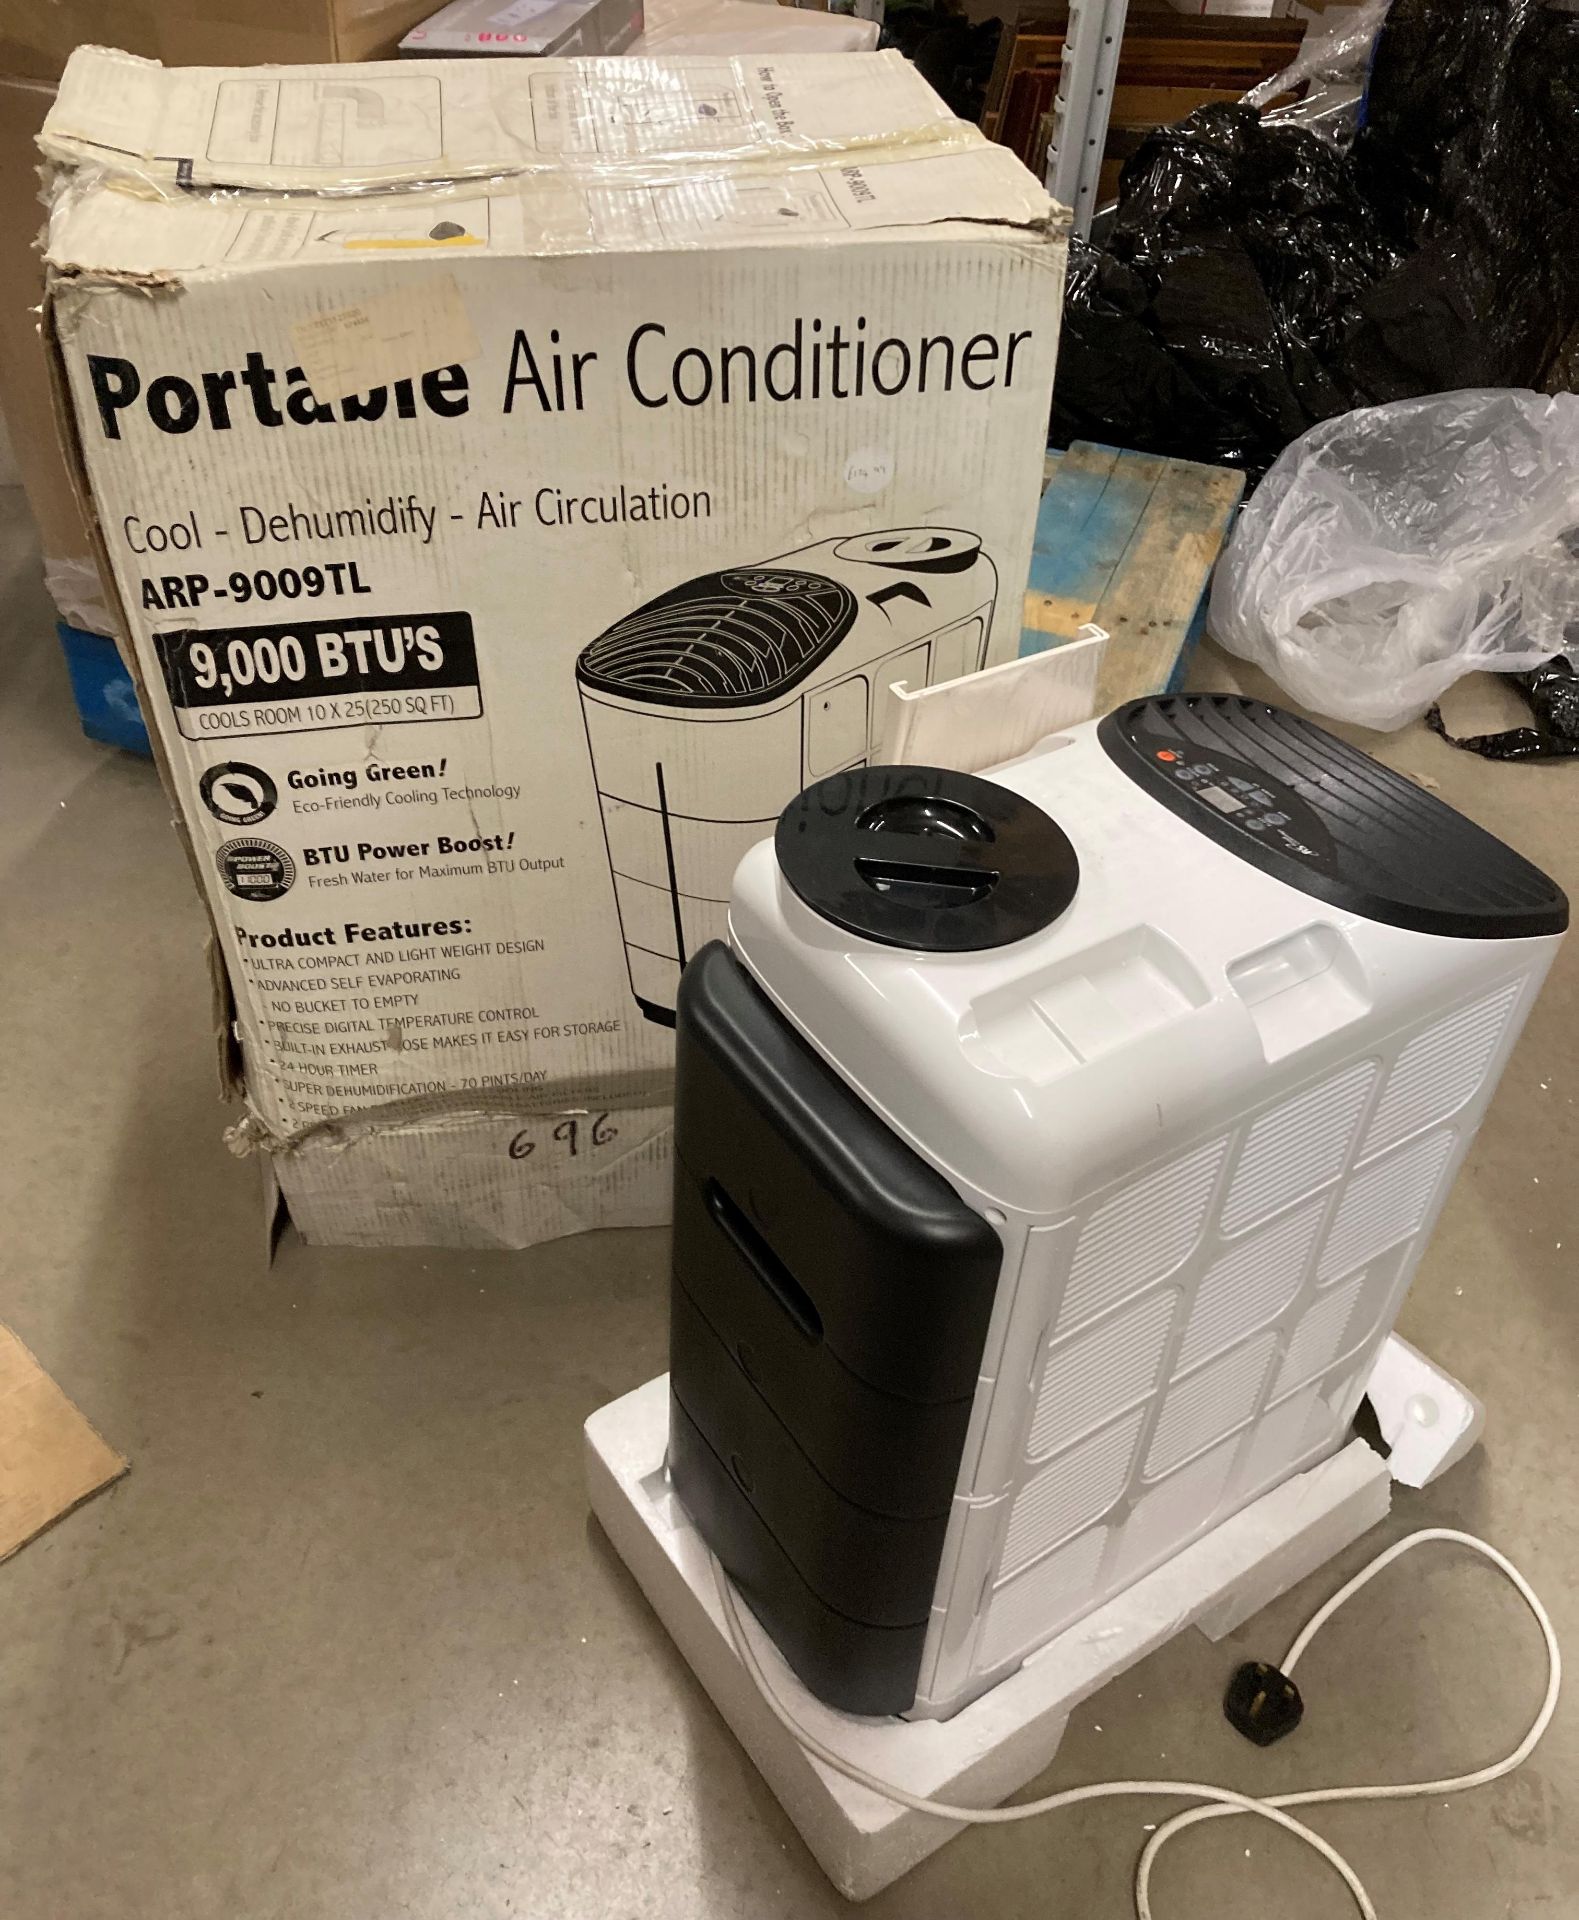 Portable air conditioner ARP-9009TL - passed PAT test,